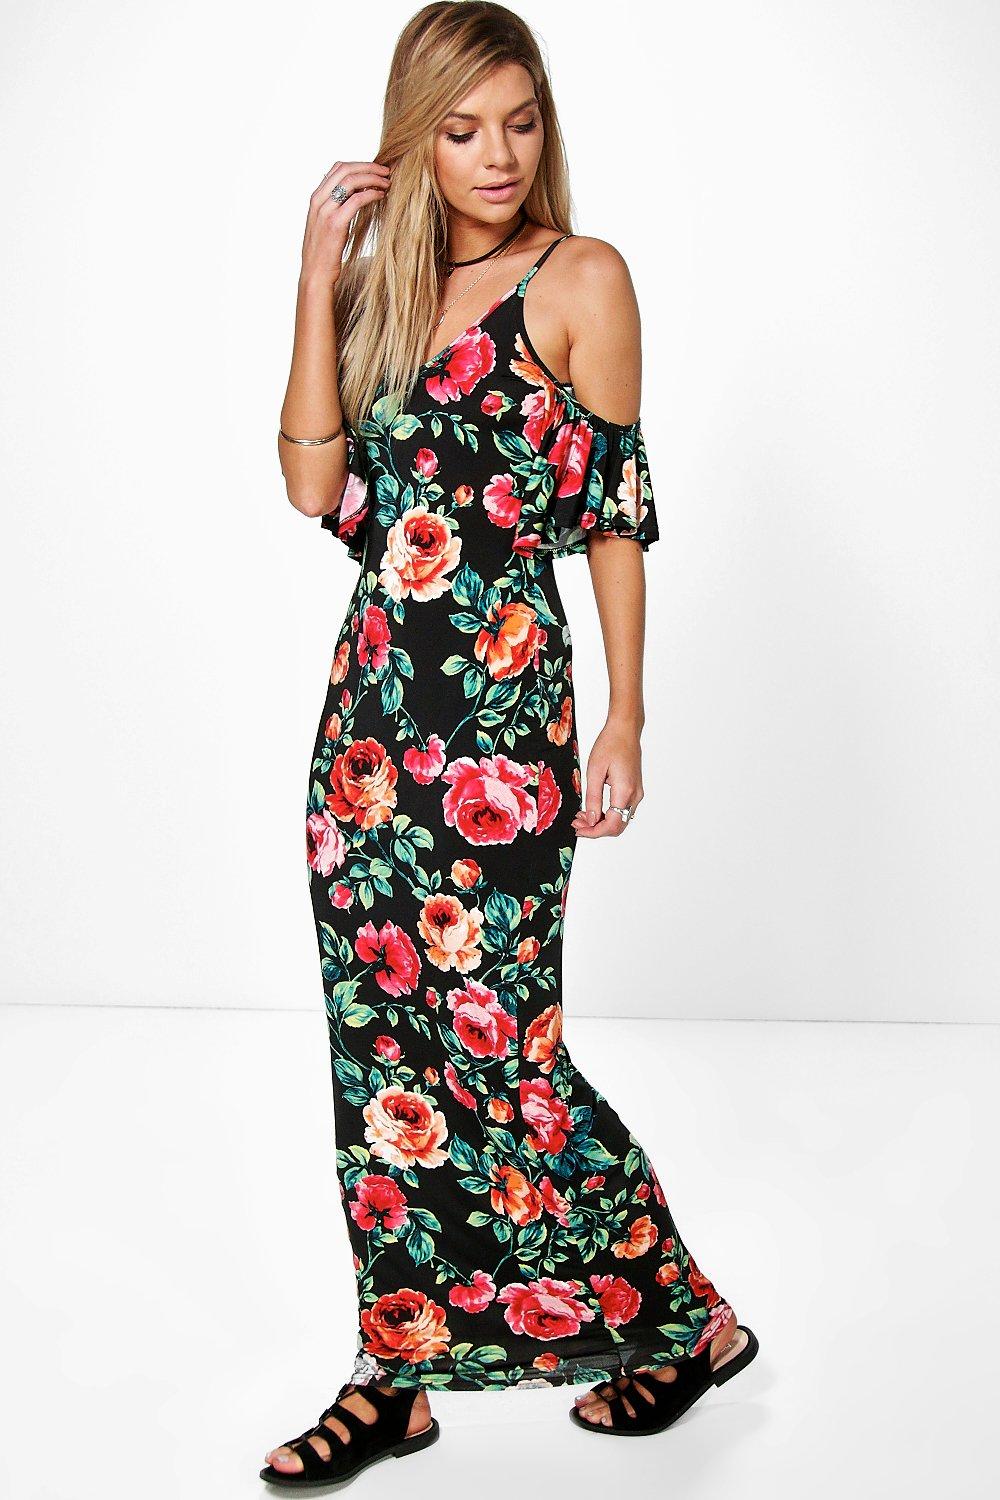 Boohoo Womens AVA Floral Cold Shoulder Maxi Dress | eBay